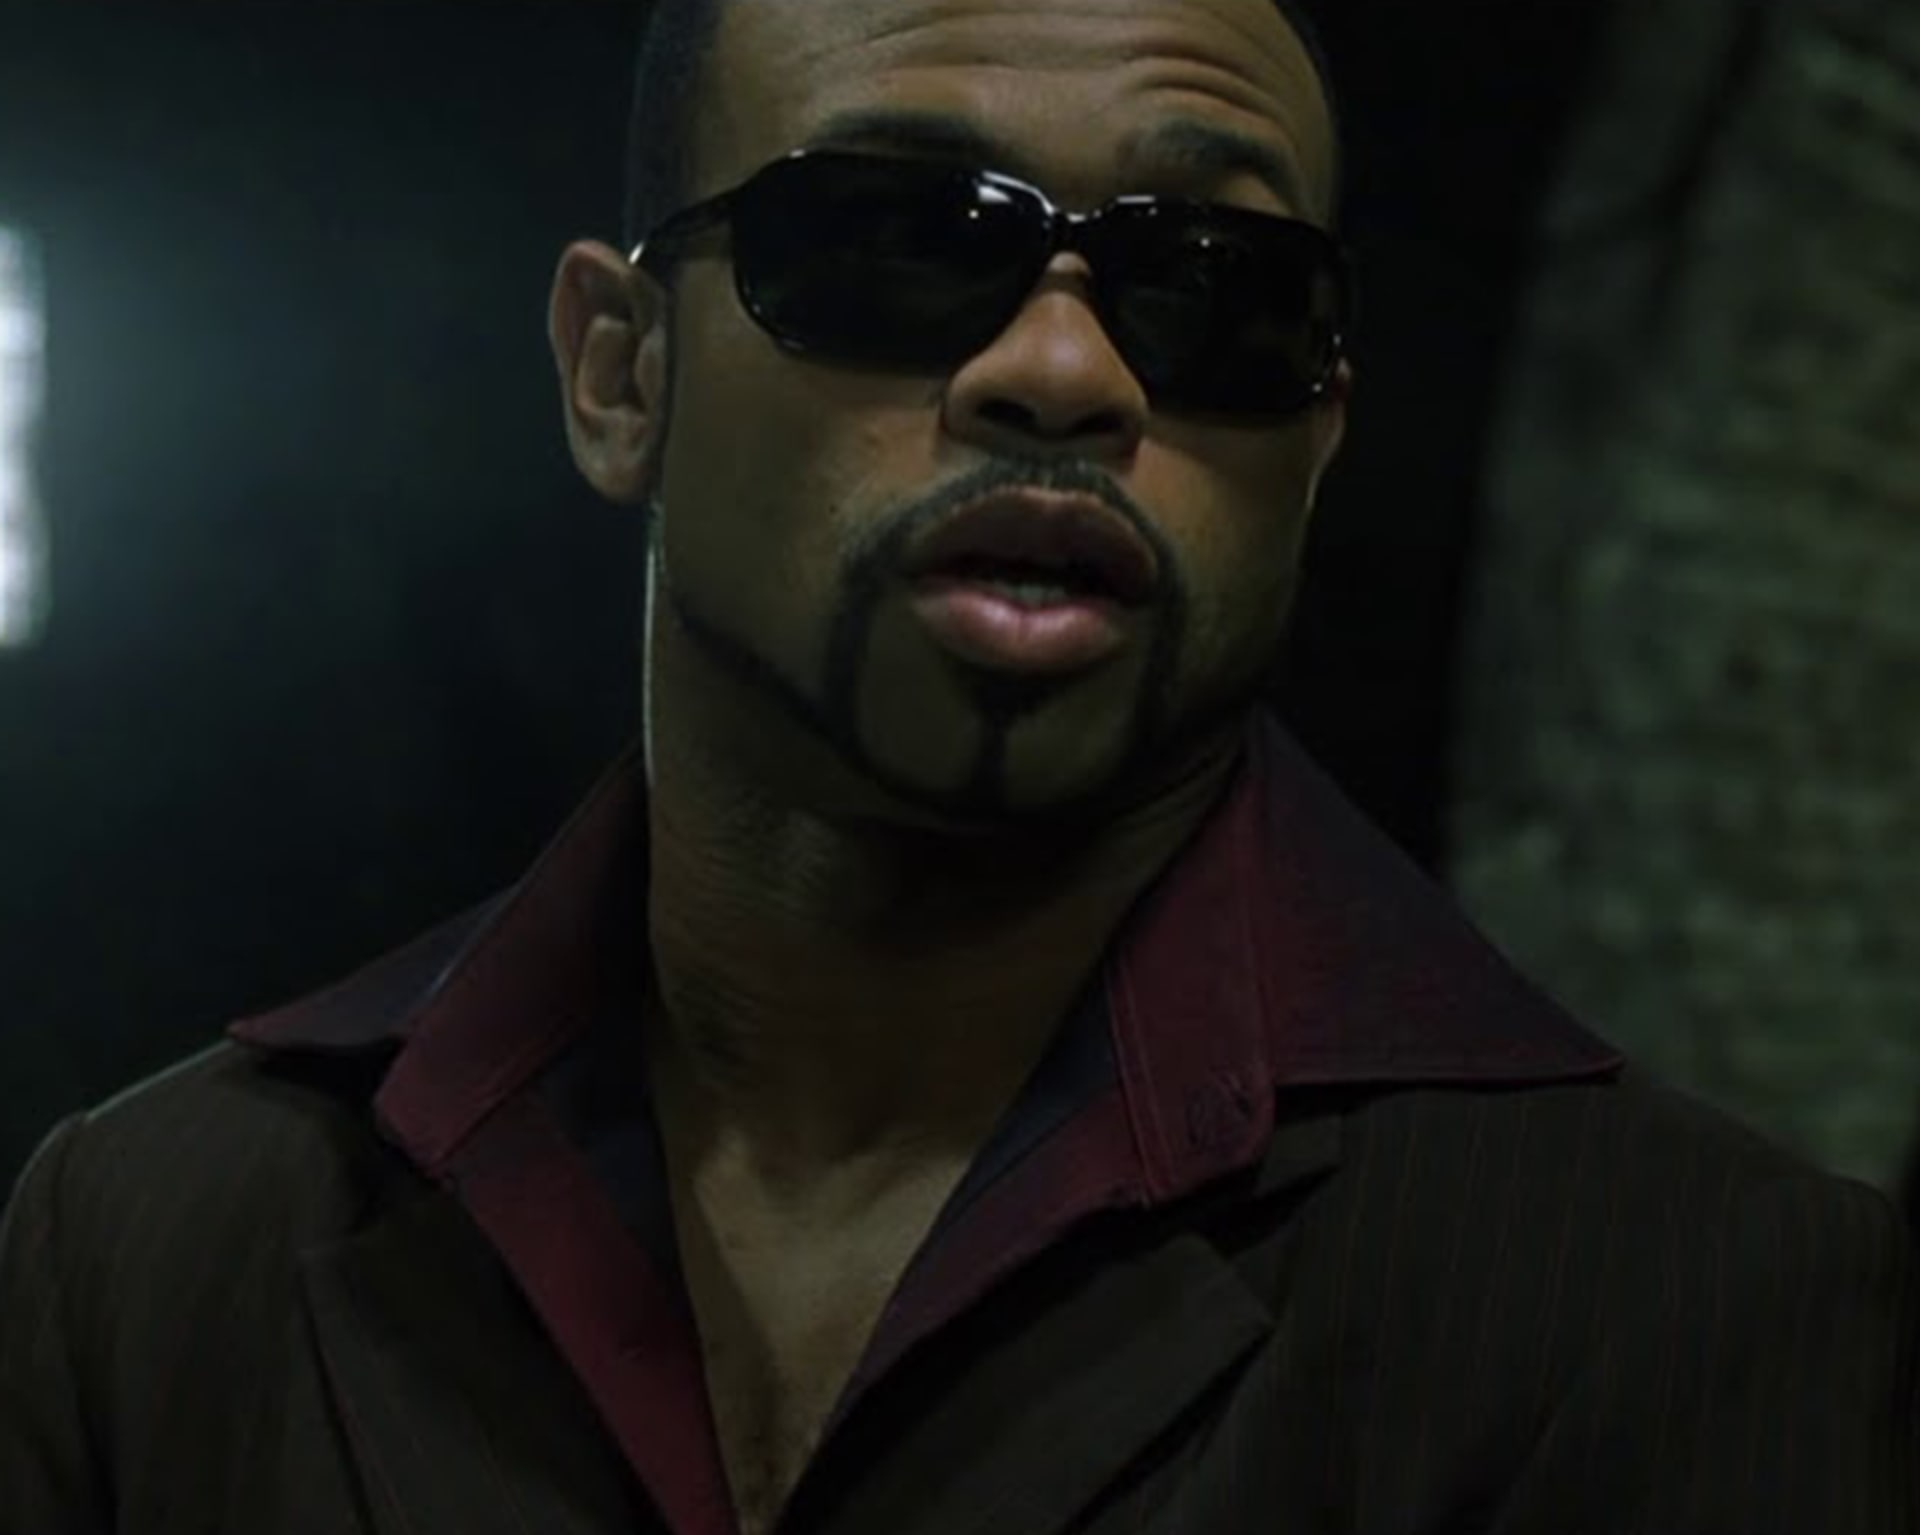 Bývalý šampion se představil také v menších filmových rolích. Tady ve snímku Matrix Reloaded.